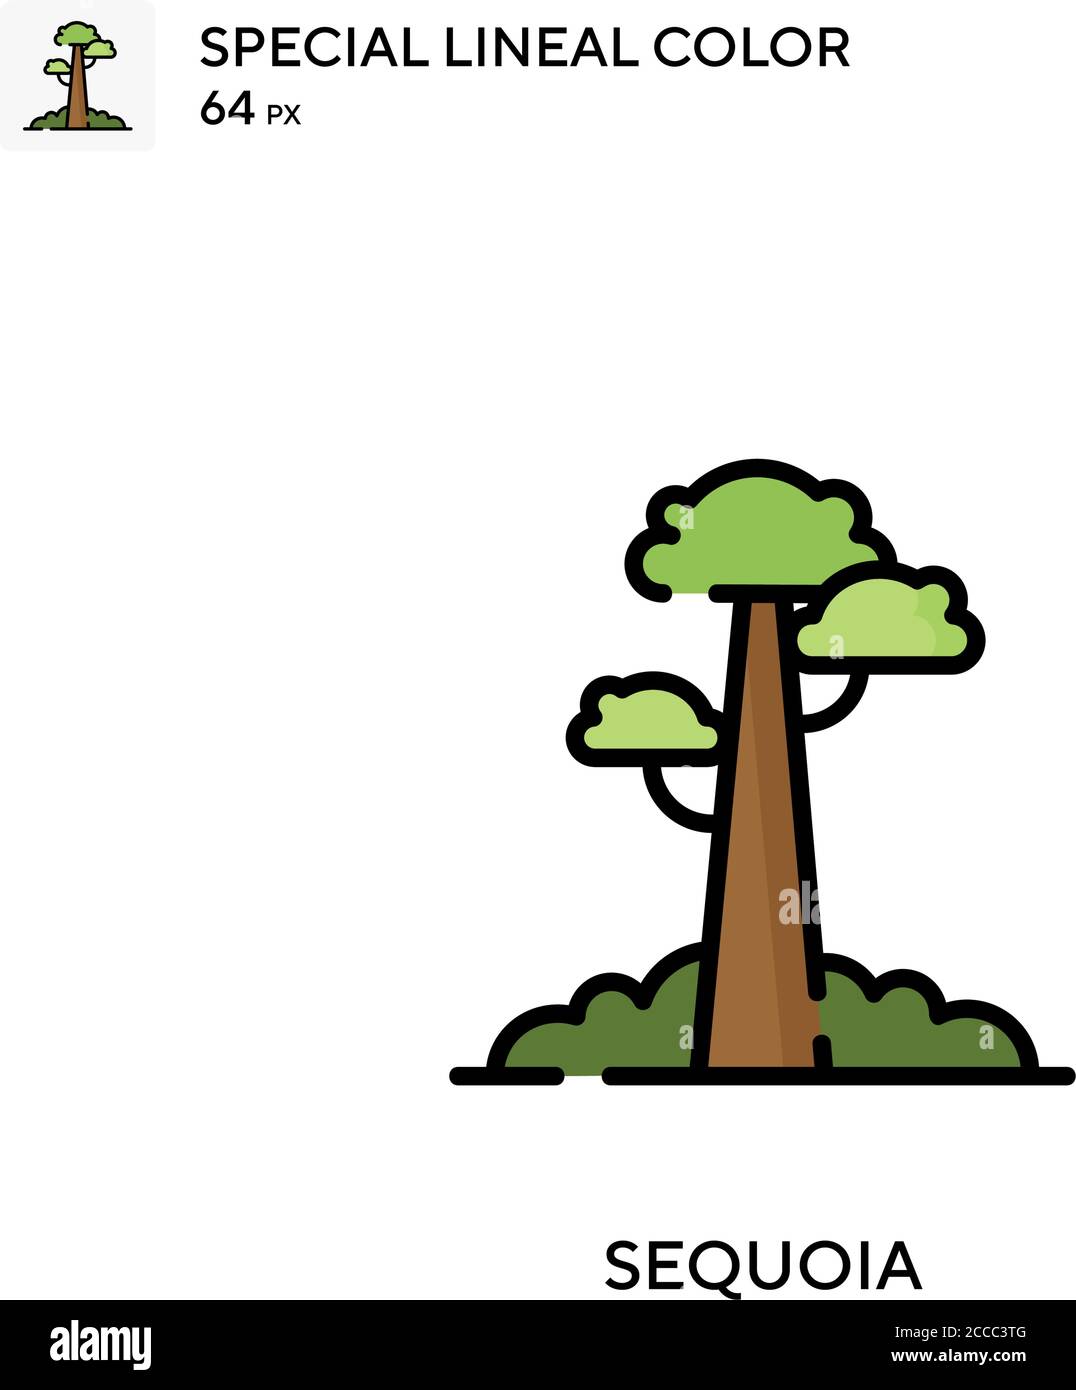 Sequoia icône de couleur spéciale de lineal. Modèle de conception de symbole d'illustration pour élément d'interface utilisateur Web mobile. Pictogramme moderne de couleur parfaite sur contour modifiable. Illustration de Vecteur